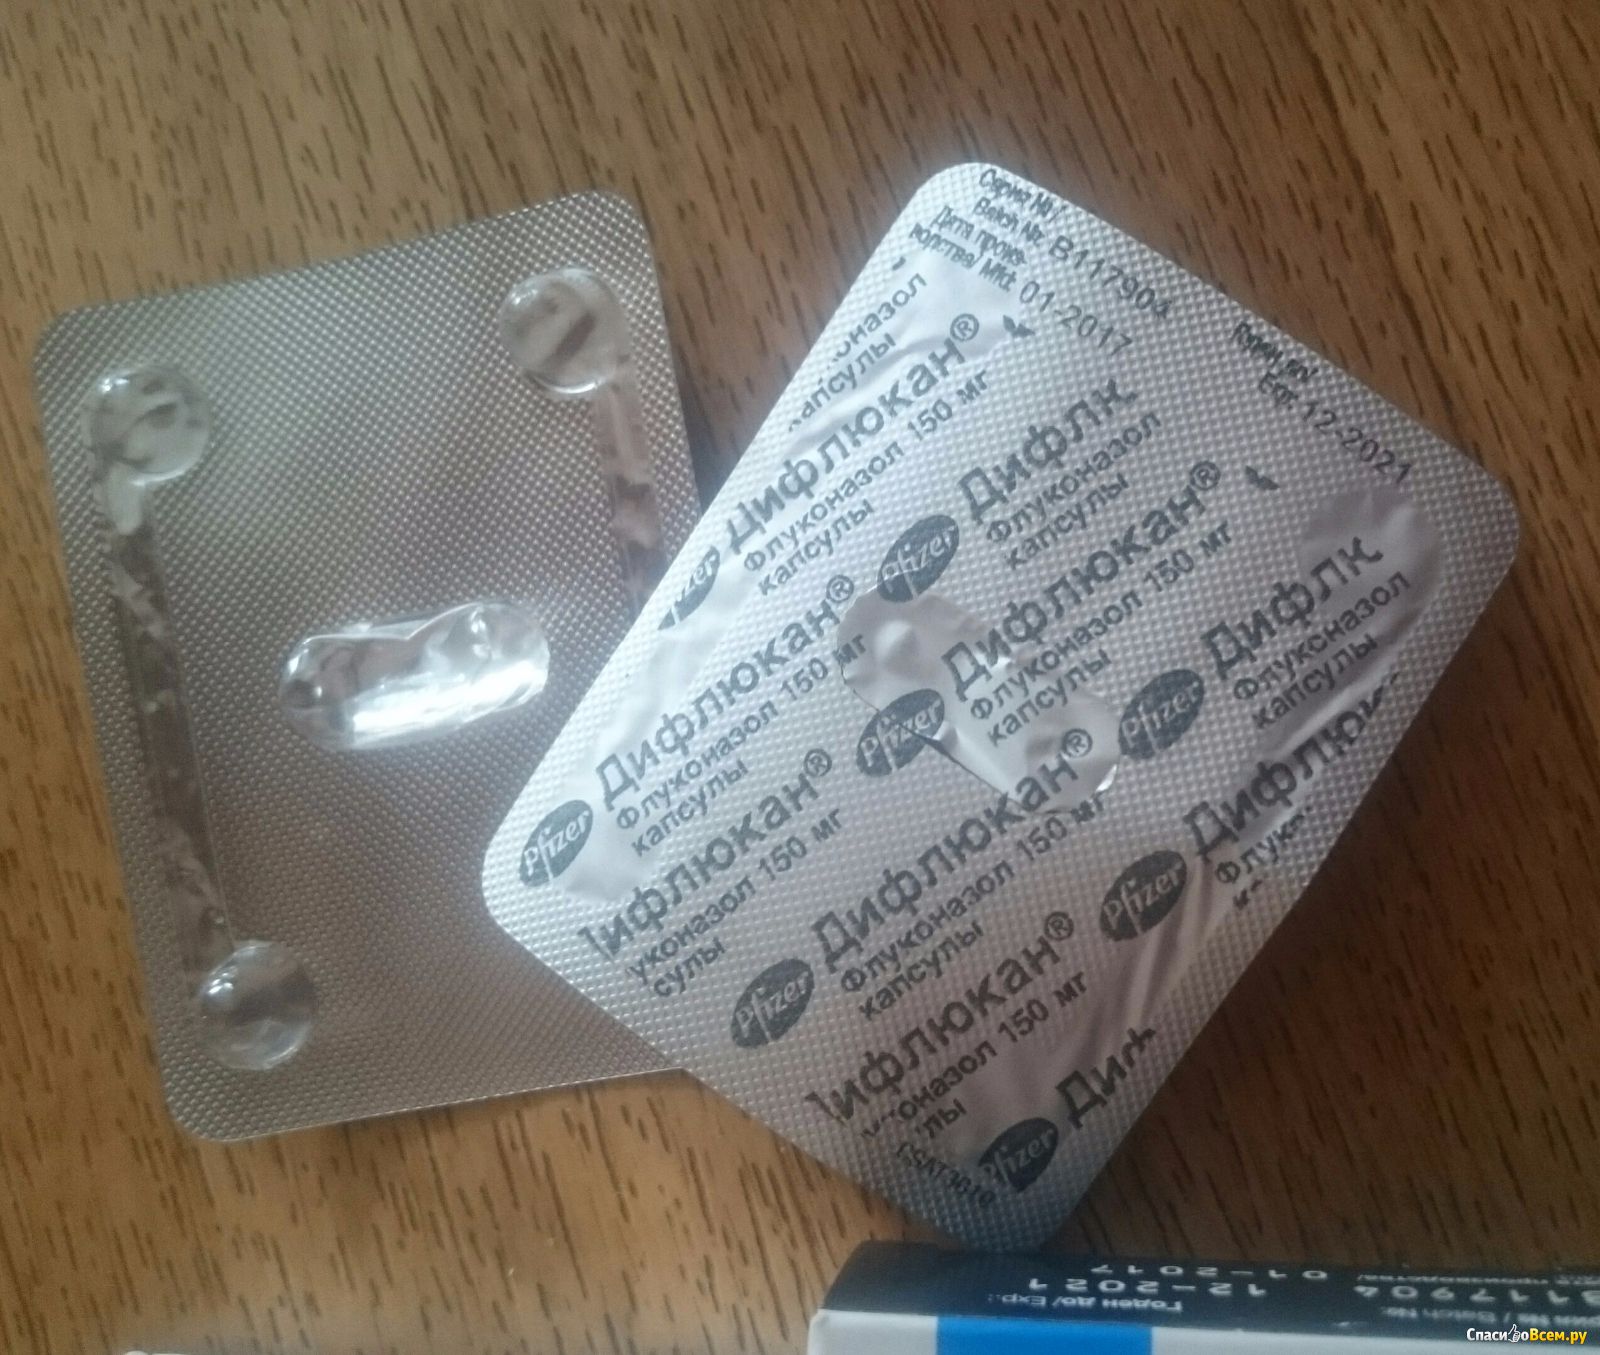 Таблетка от молочницы 1 штука. Одна таблетка в упаковке. 1 Таблетка в упаковке от молочницы. Антибиотик 1 таблетка в упаковке.